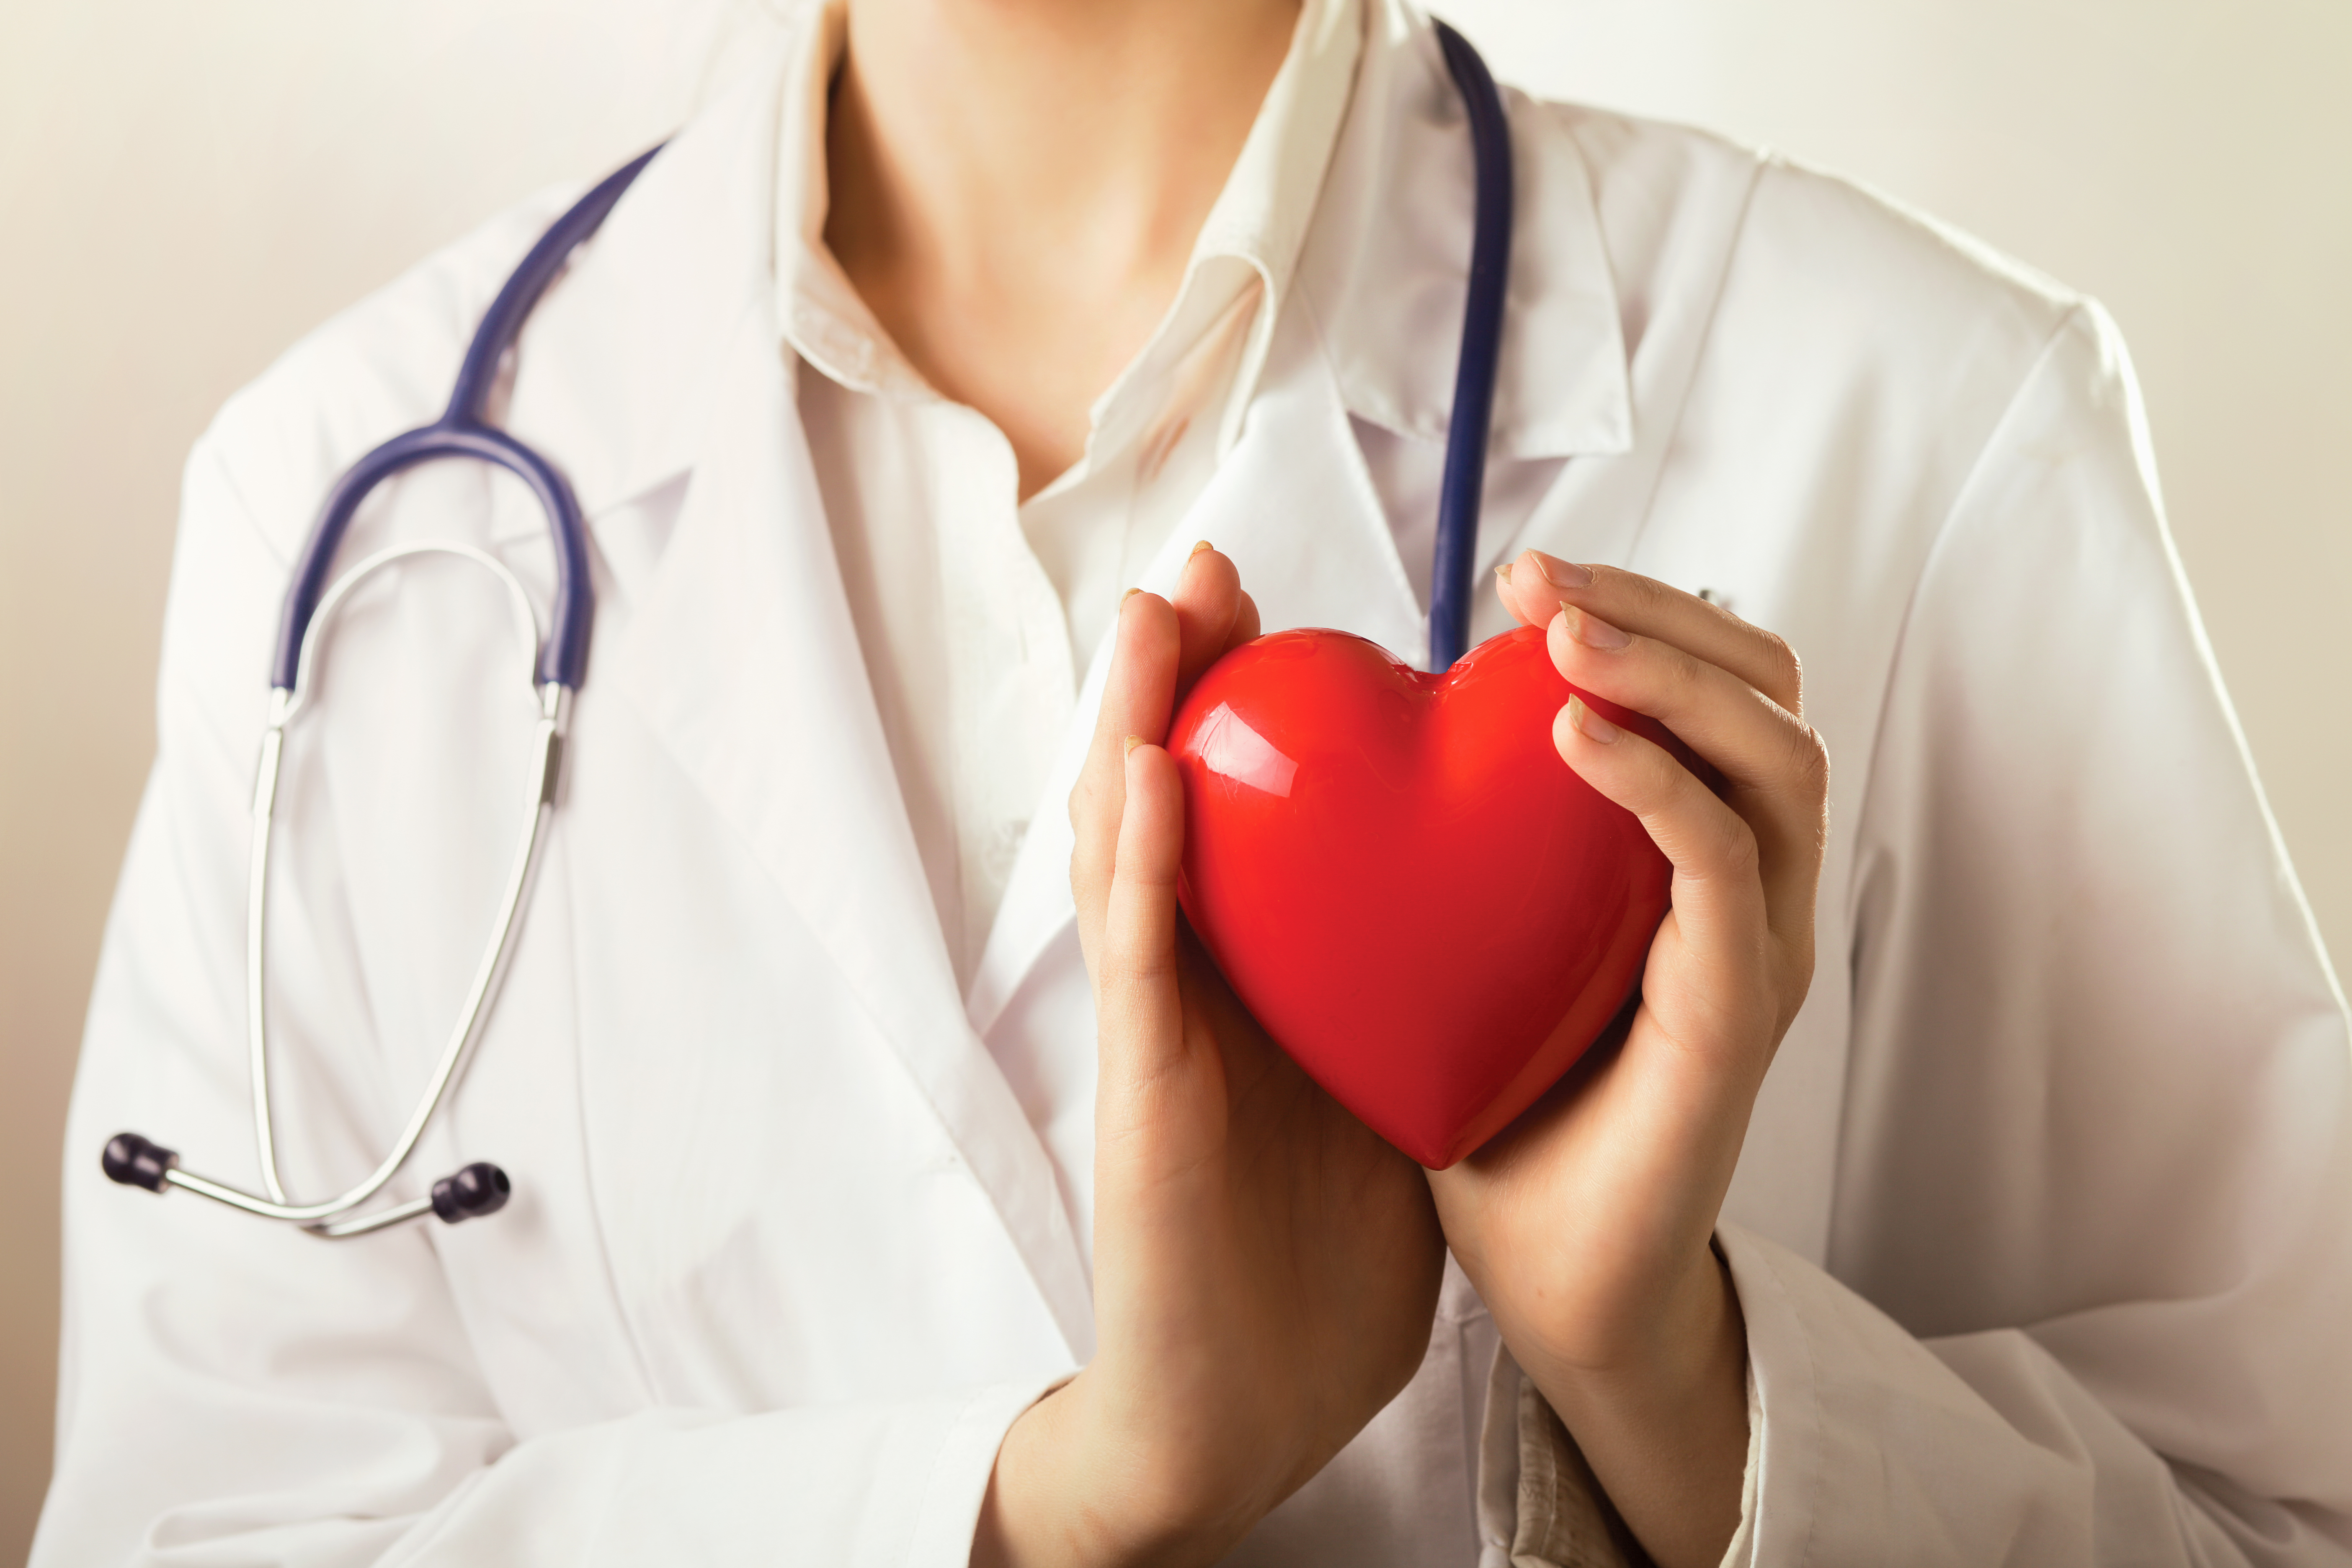 A nivel mundial, las enfermedades cardiovasculares constituyen el 31% de las muertes, según la Organización Mundial de la Salud (OMS).